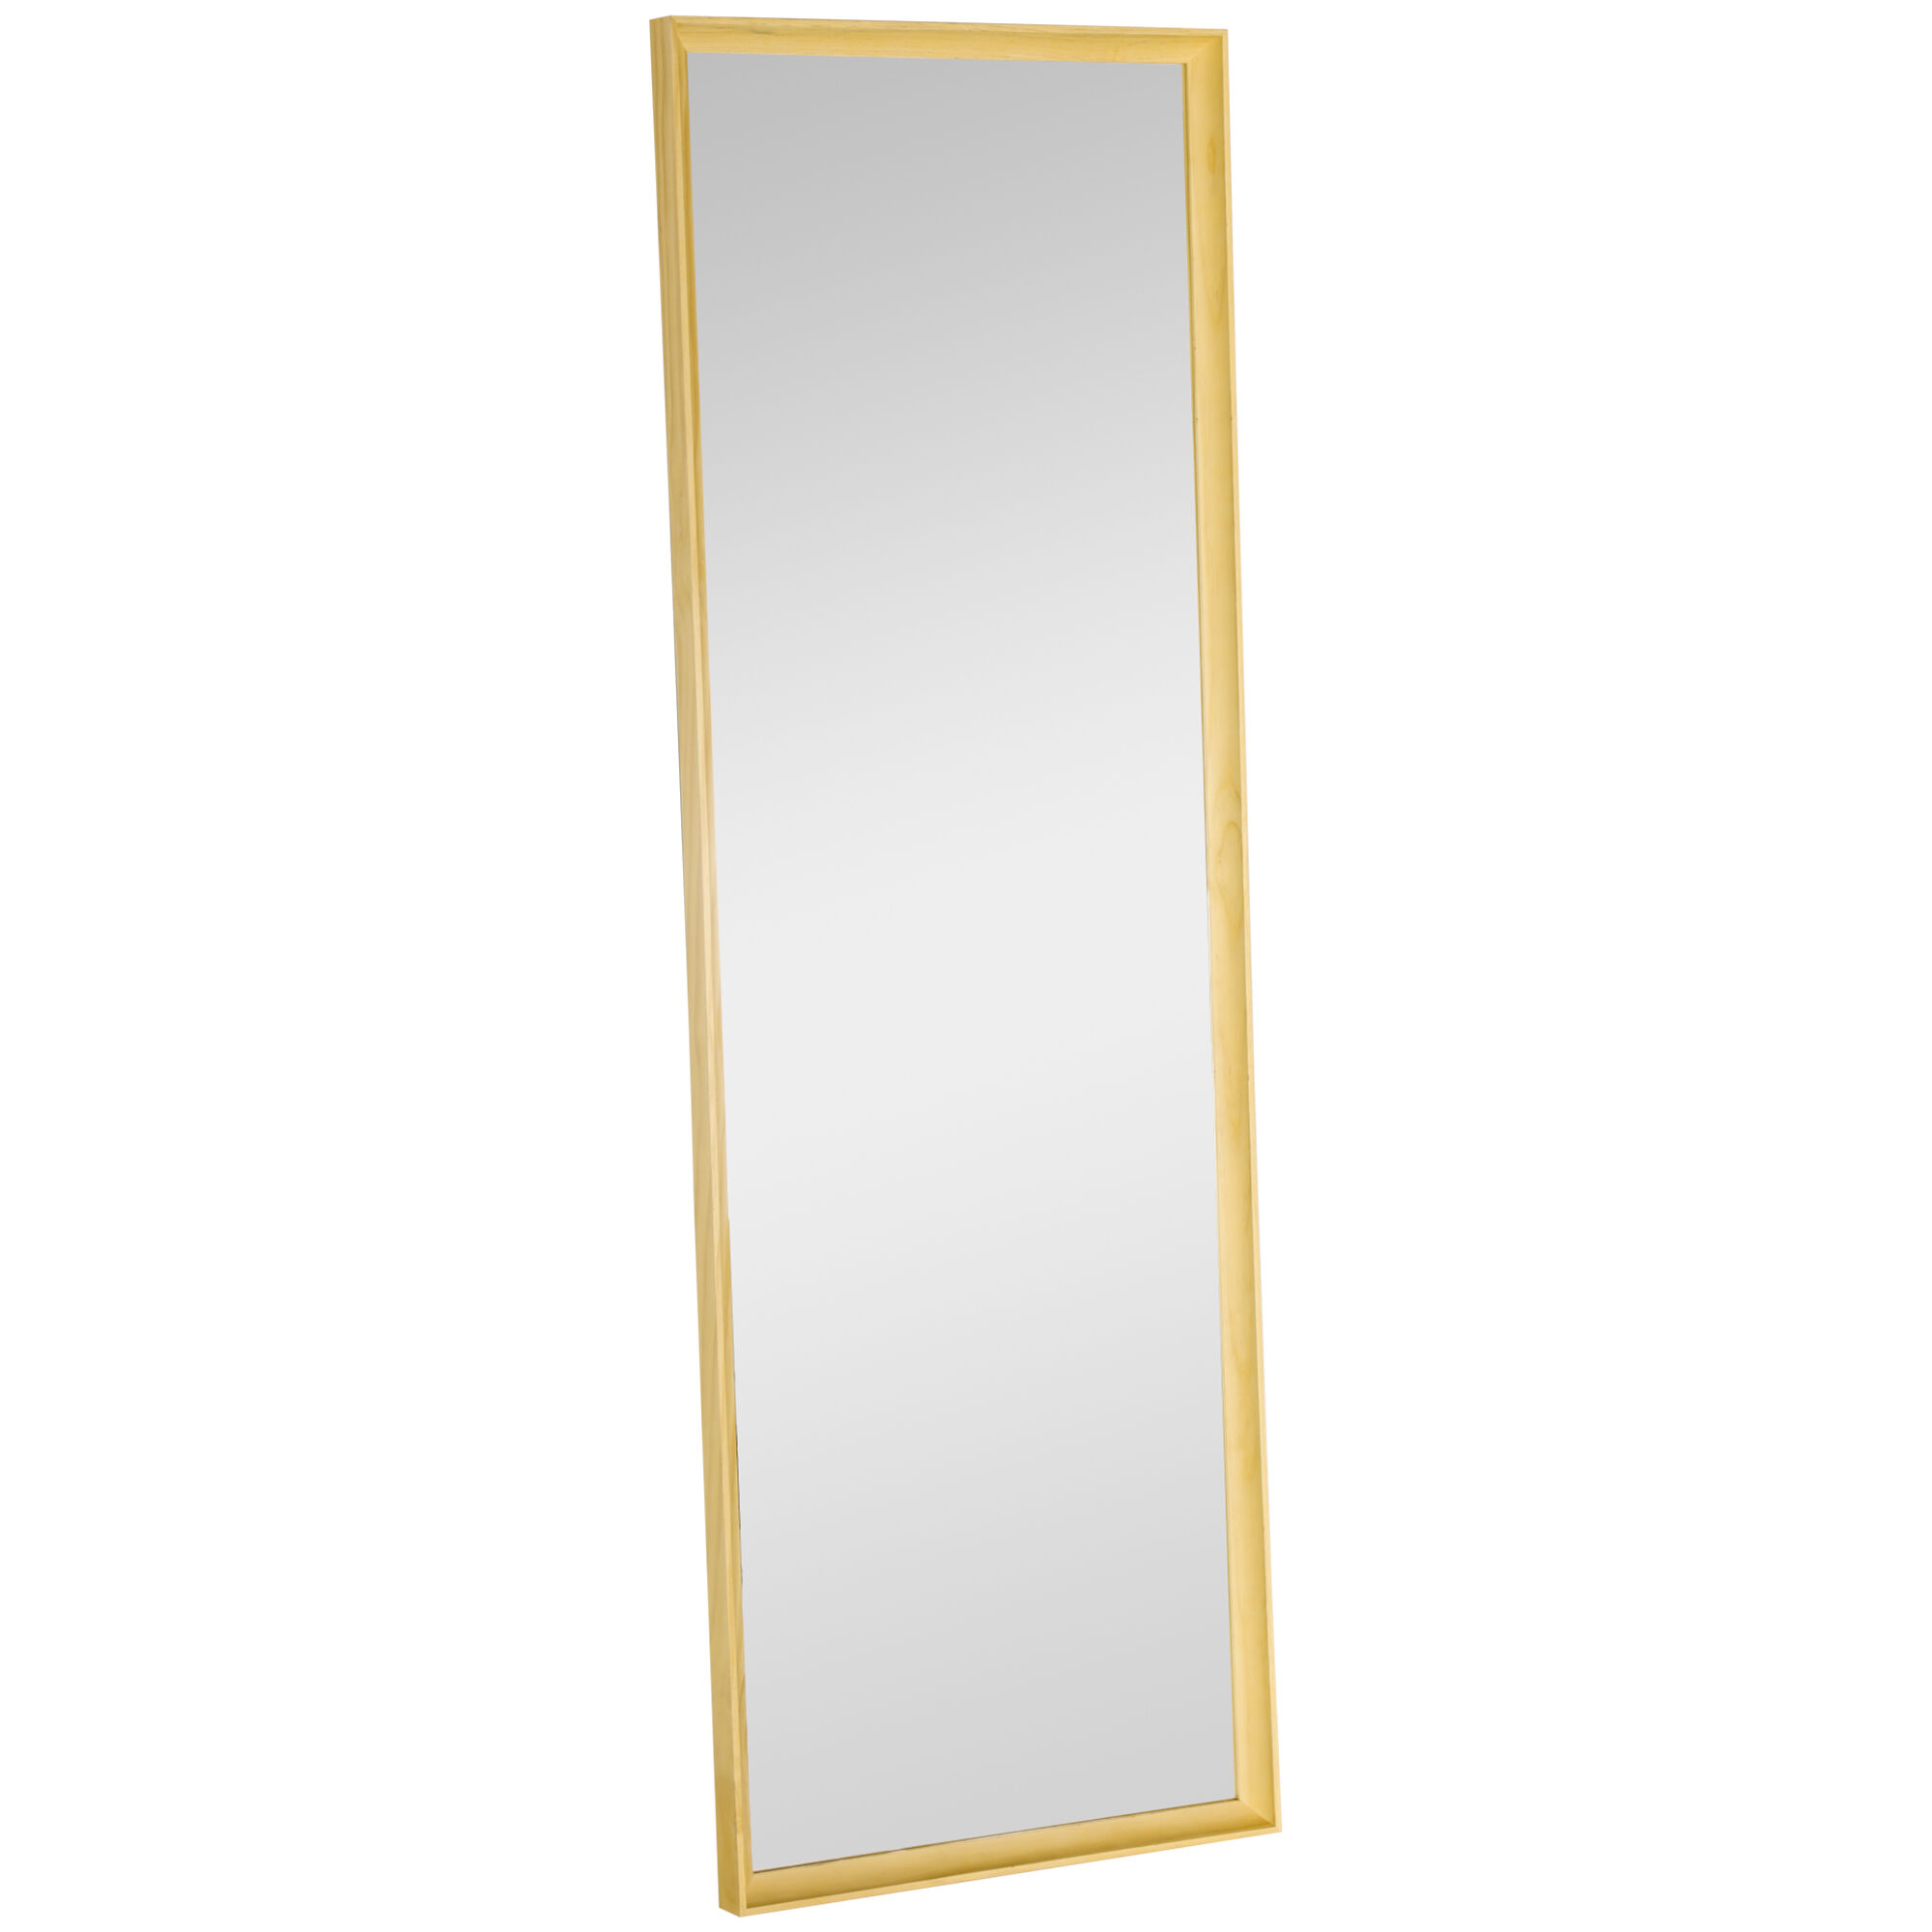 Homcom Espejo de Cuerpo Entero Moderno 163x53,5 cm Espejo de Pared Grande con Marco de Madera Decorativo para Salón Dormitorio Natural